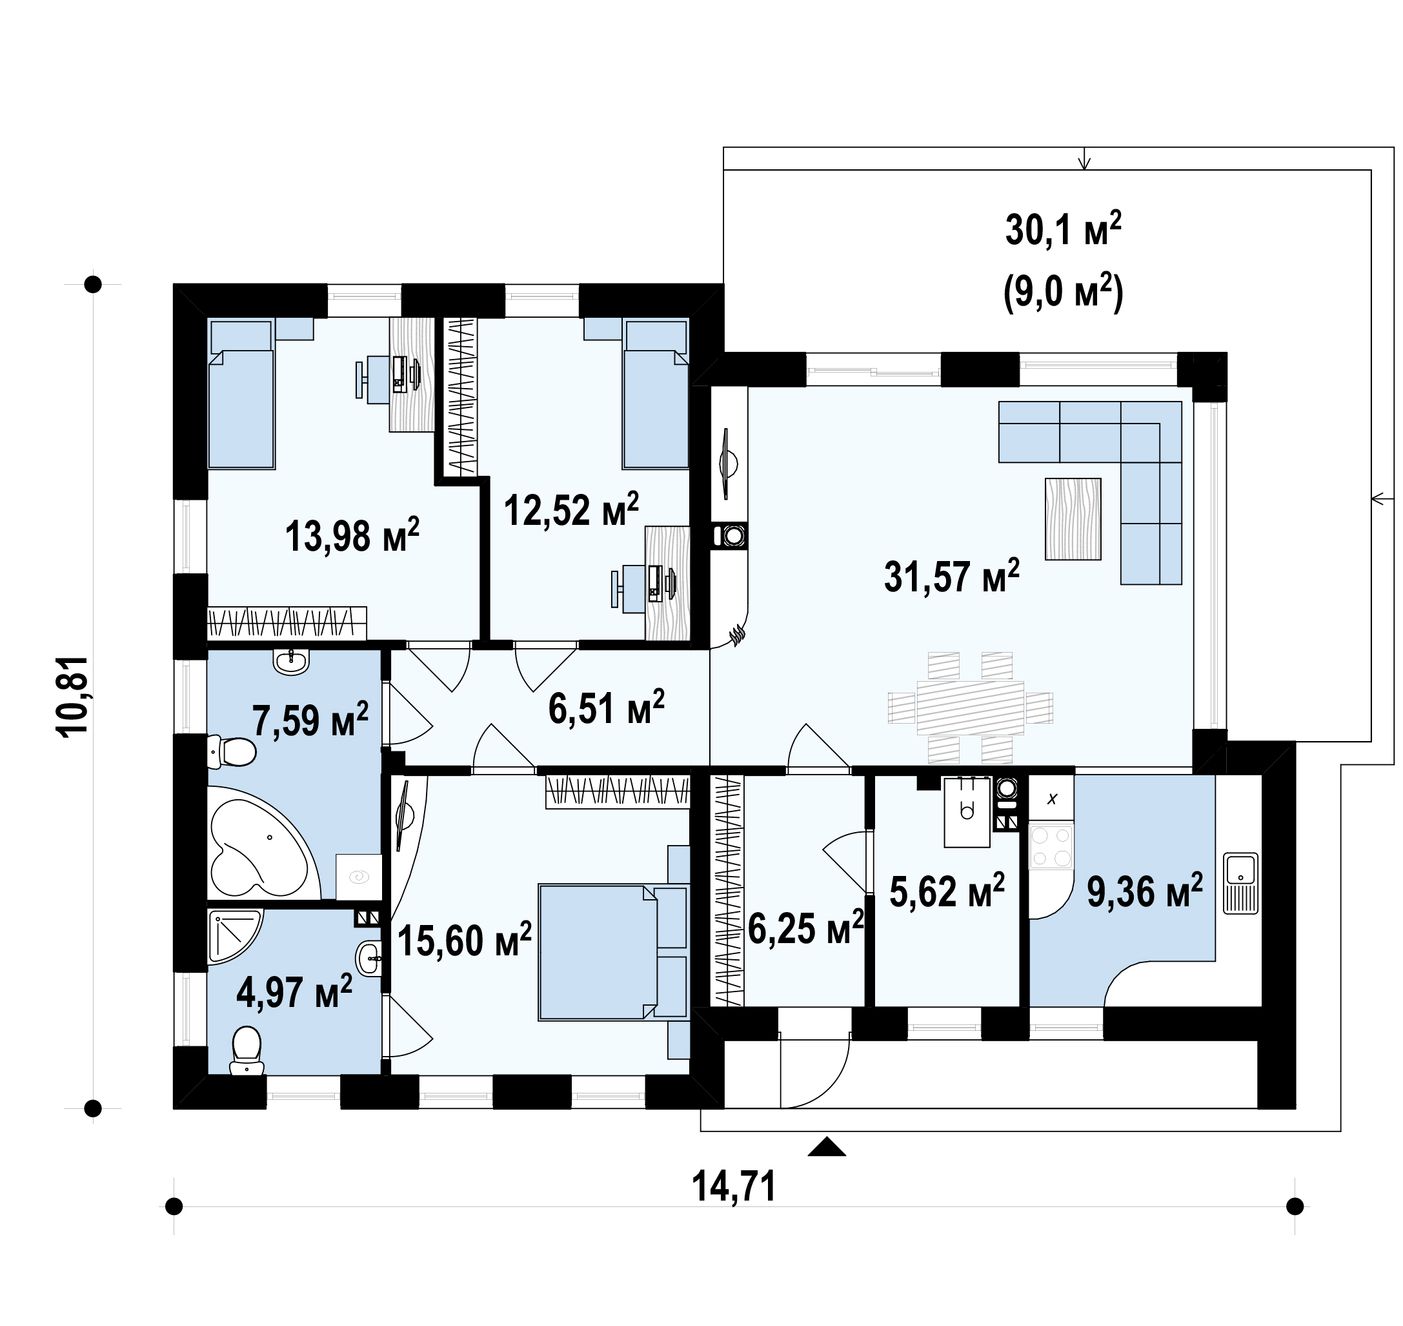 1-ый этаж 114,0 / 123,0 m² дома Zx35